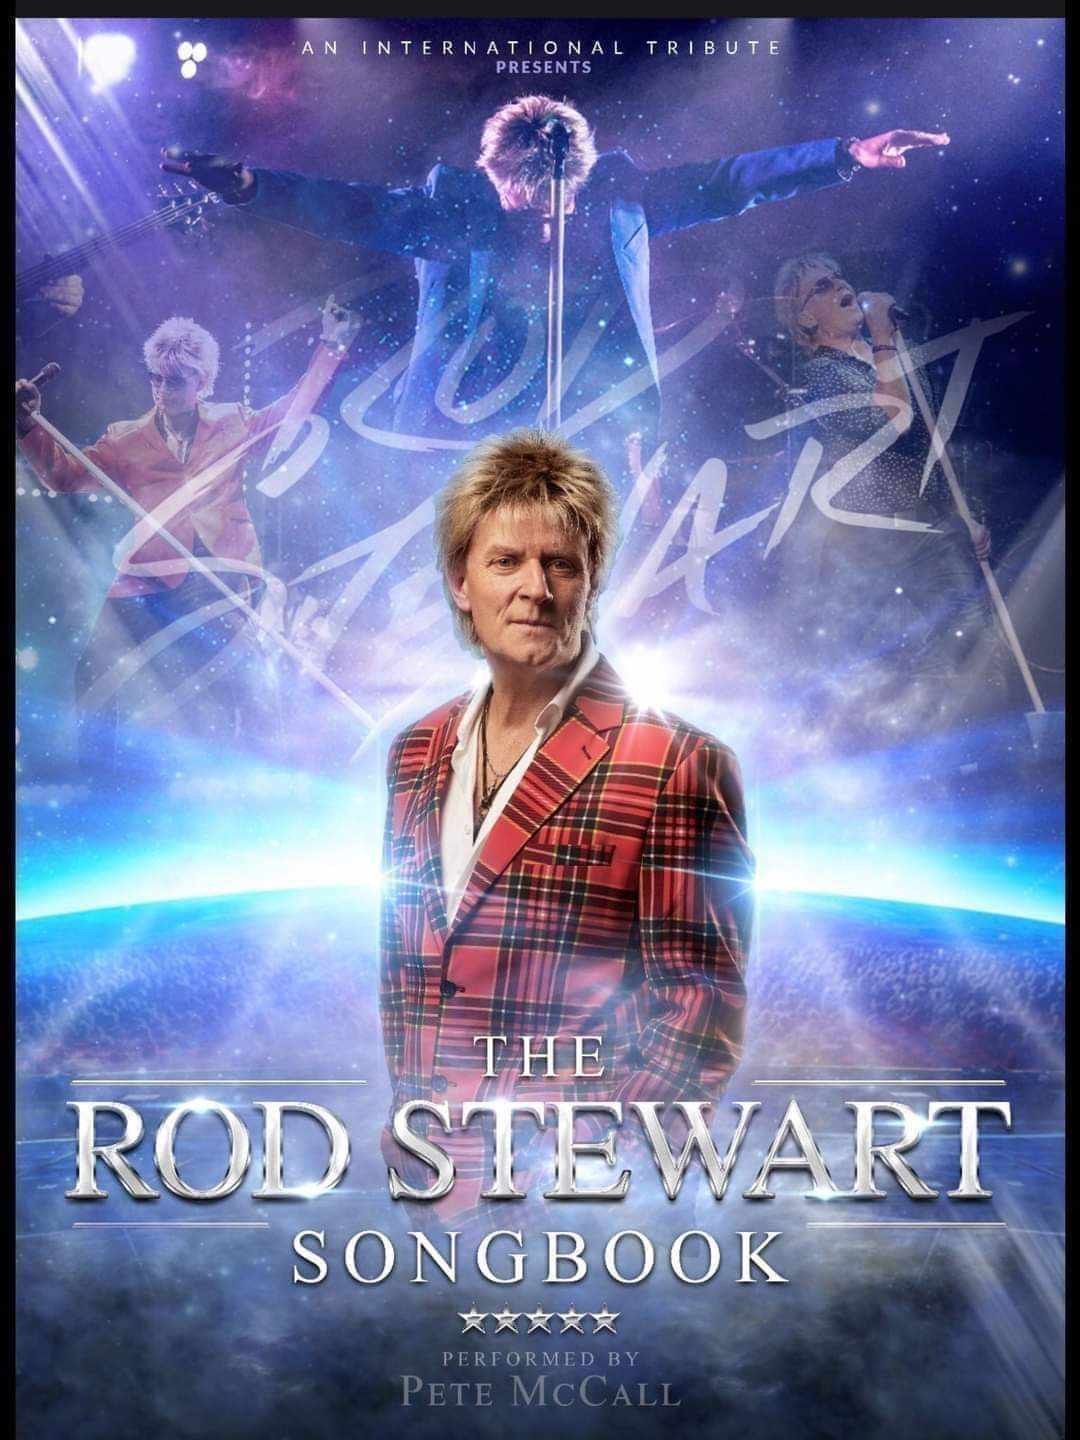 Rod Stewart  on déc. 31, 19:30@Benwick village hall - Achetez des billets et obtenez des informations surwhittlesey music nights 